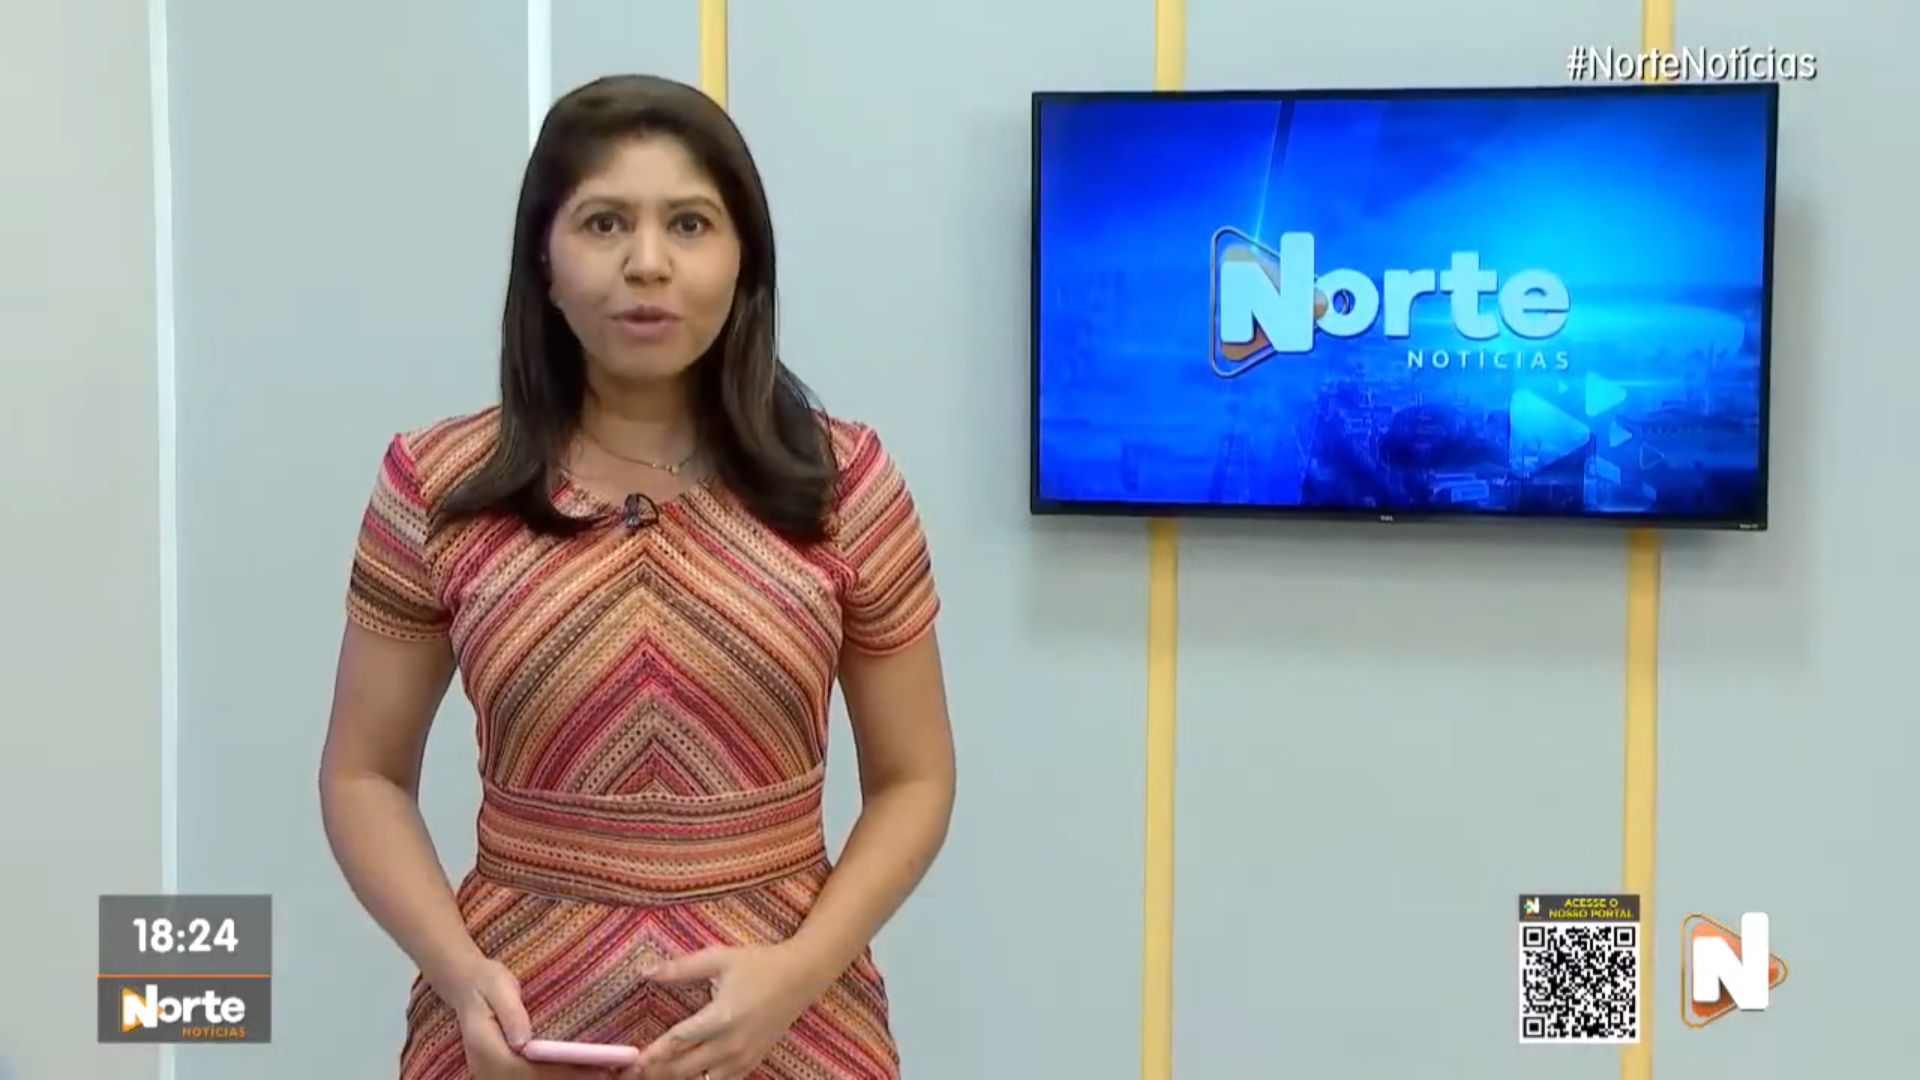 O Norte Notícias é apresentado por Mariana Rocha - Foto: Reprodução/TV Norte Amazonas